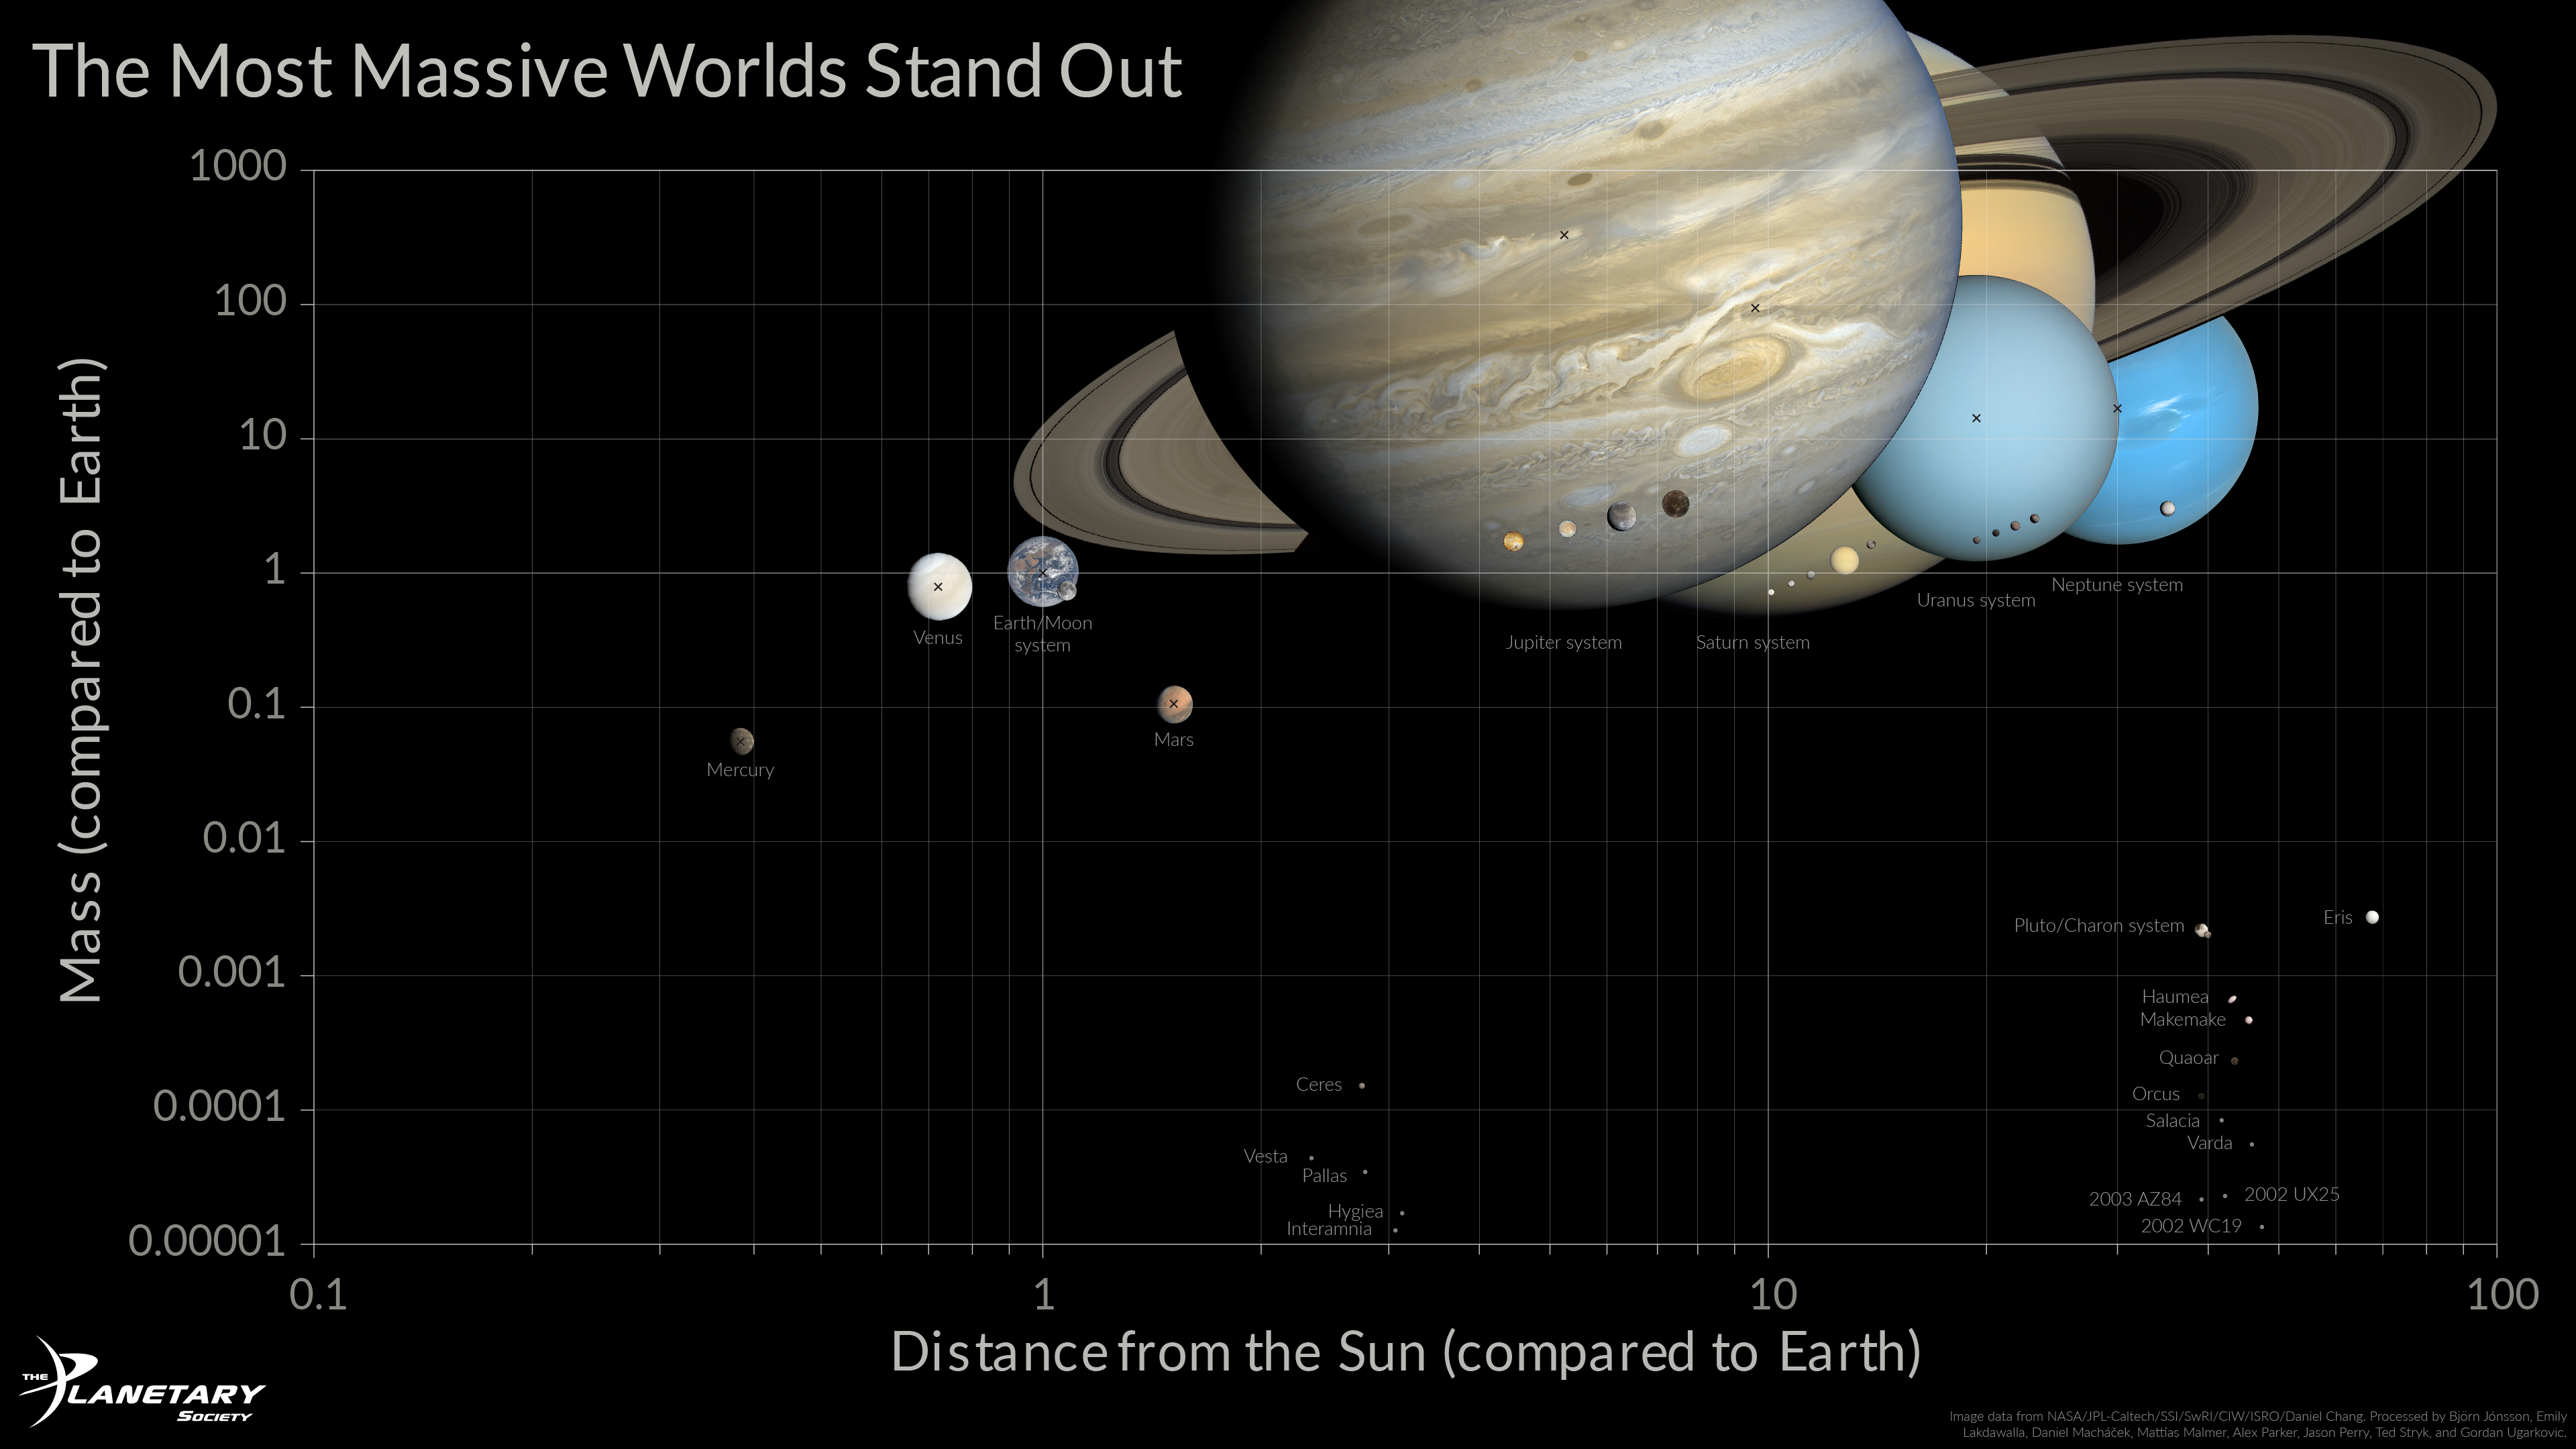 solar system planet comparison chart